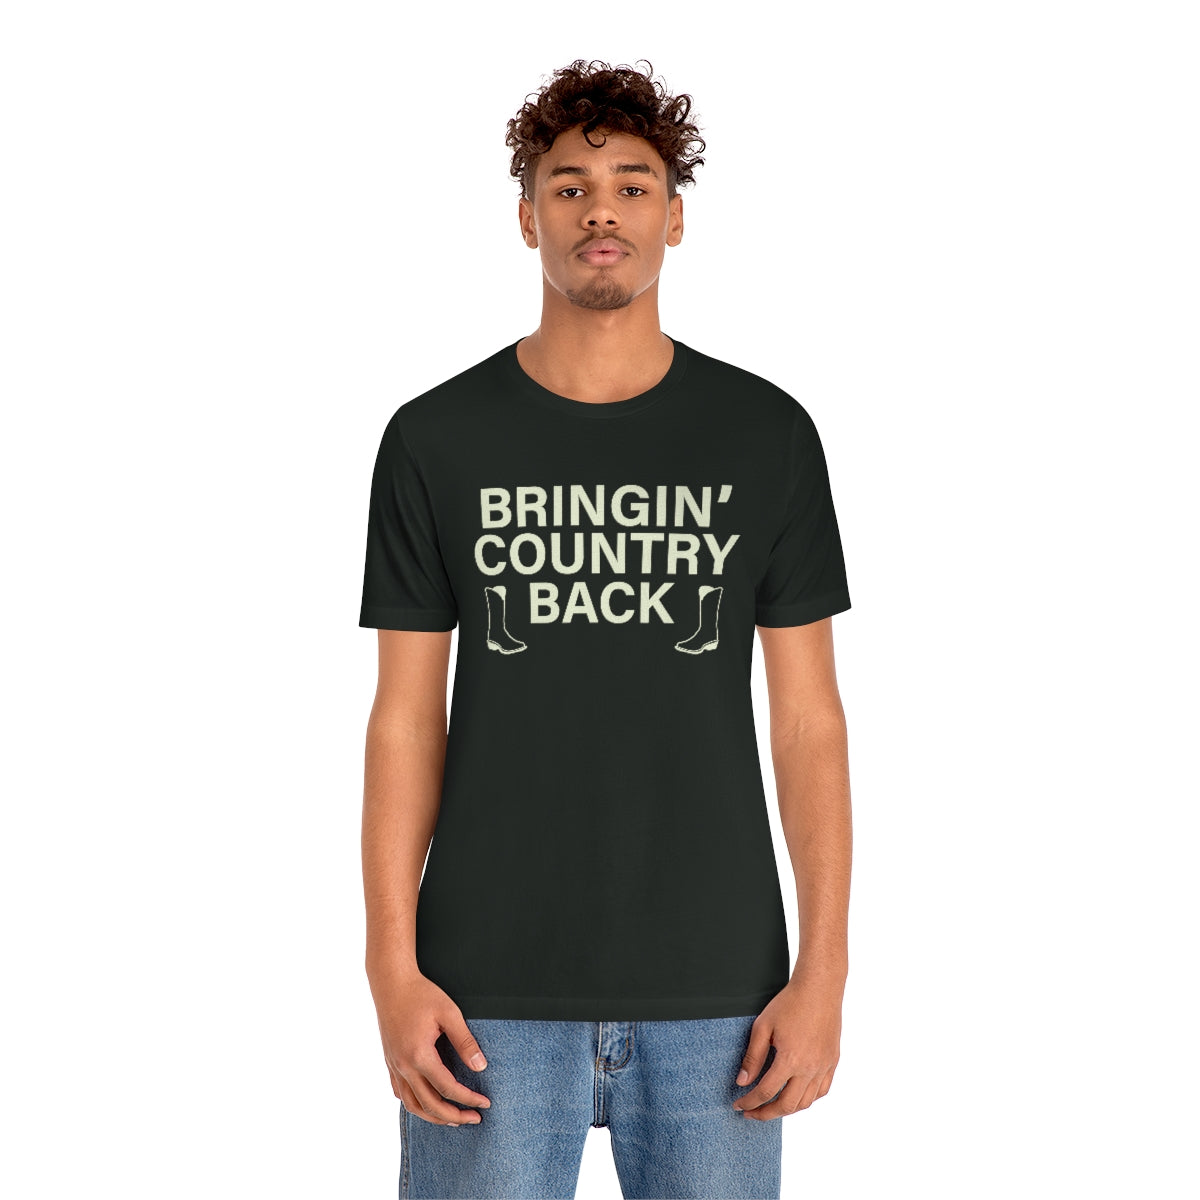 Bringin' Country Back T shirt